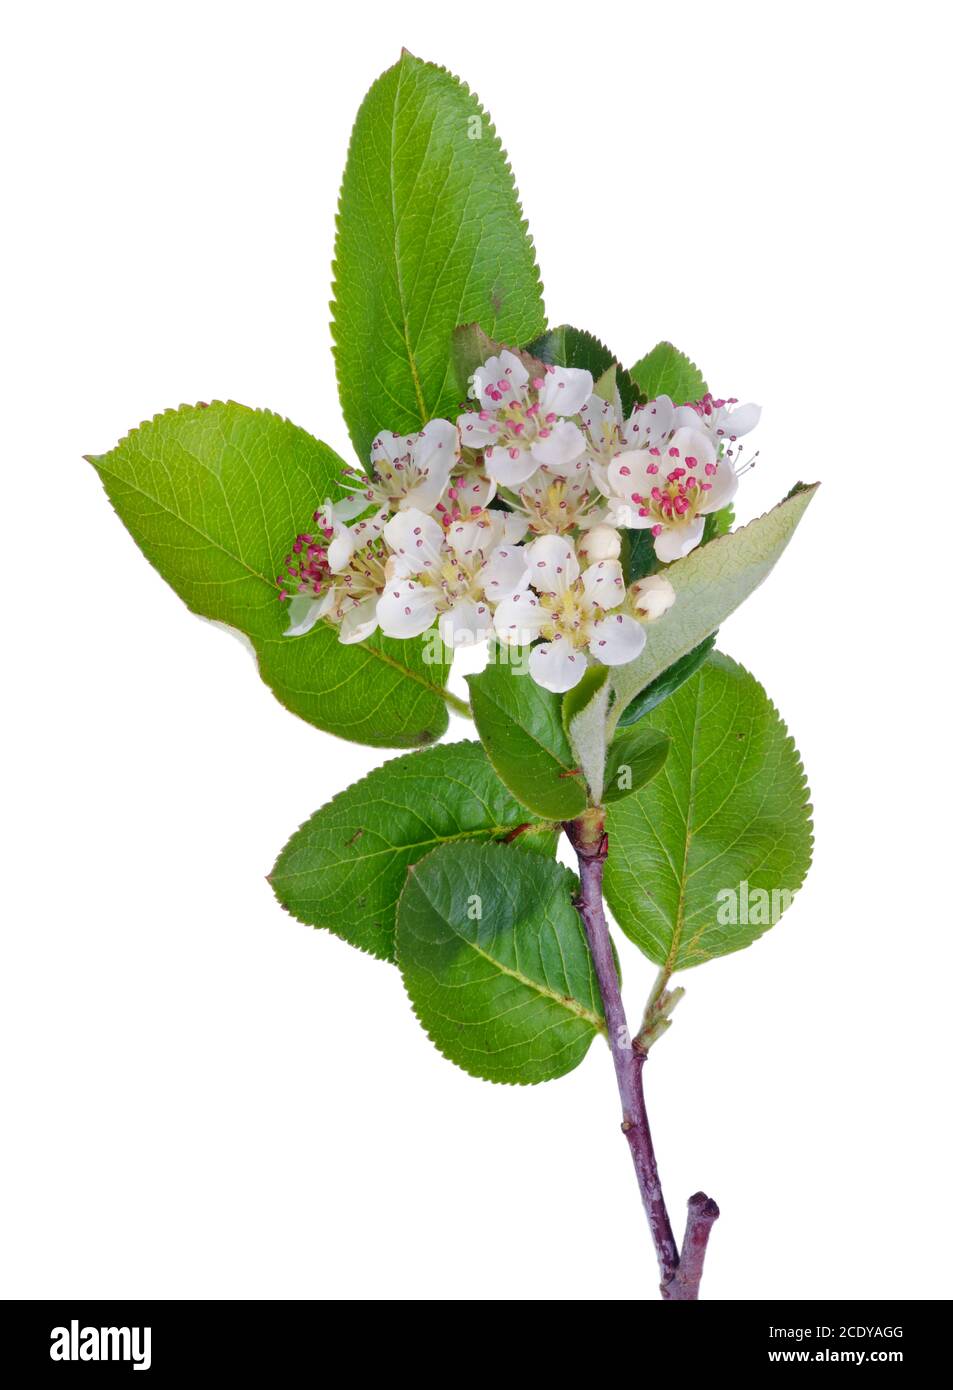 Printemps mai branche de fleurs oiseau sauvage Cherry arbre avec petites fleurs blanches isolées verticalement Banque D'Images